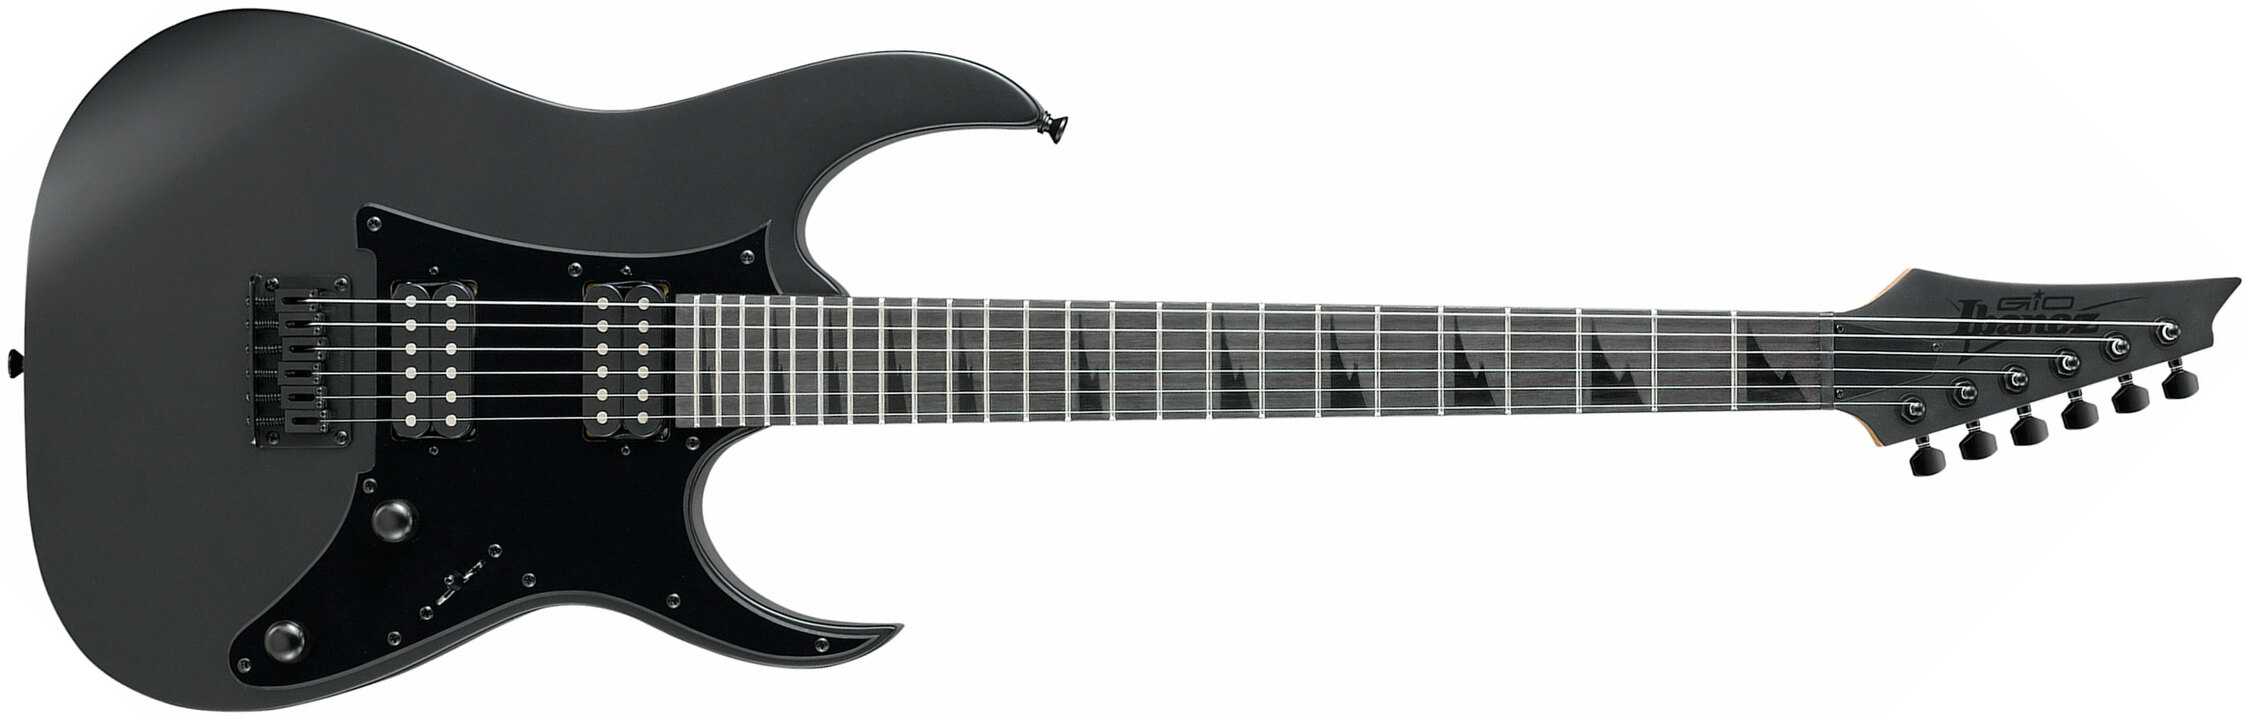 Ibanez Grgr131ex Bkf Gio Hh Ht Pur - Black Flat - Elektrische gitaar in Str-vorm - Main picture